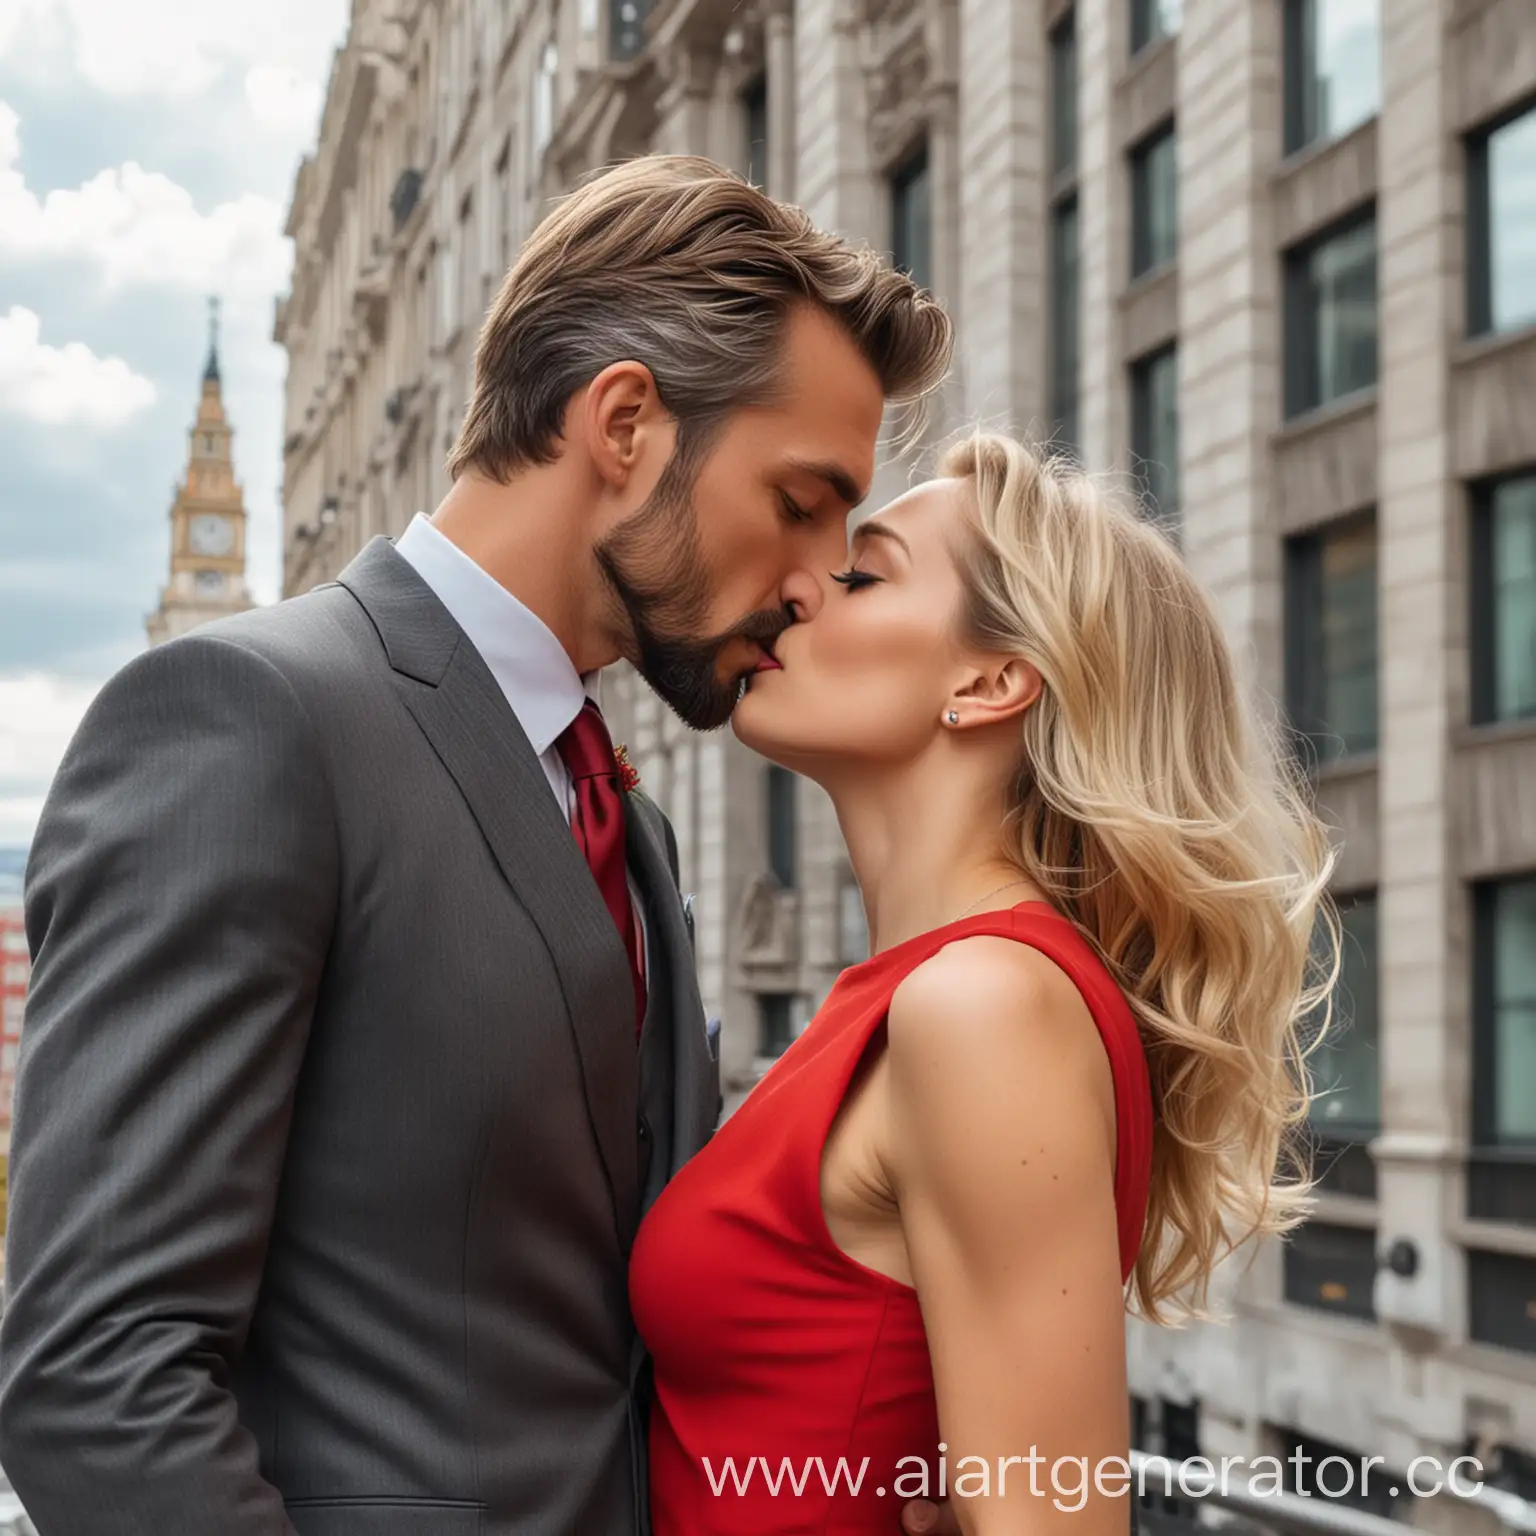 мужина, с каштановыми волосами и короткой  слегка седой бородой в строгом тёмно-сером костюме целует девушку блондинку с уложенными волосами в красном обтягивающем платье на фоне высотного здания
